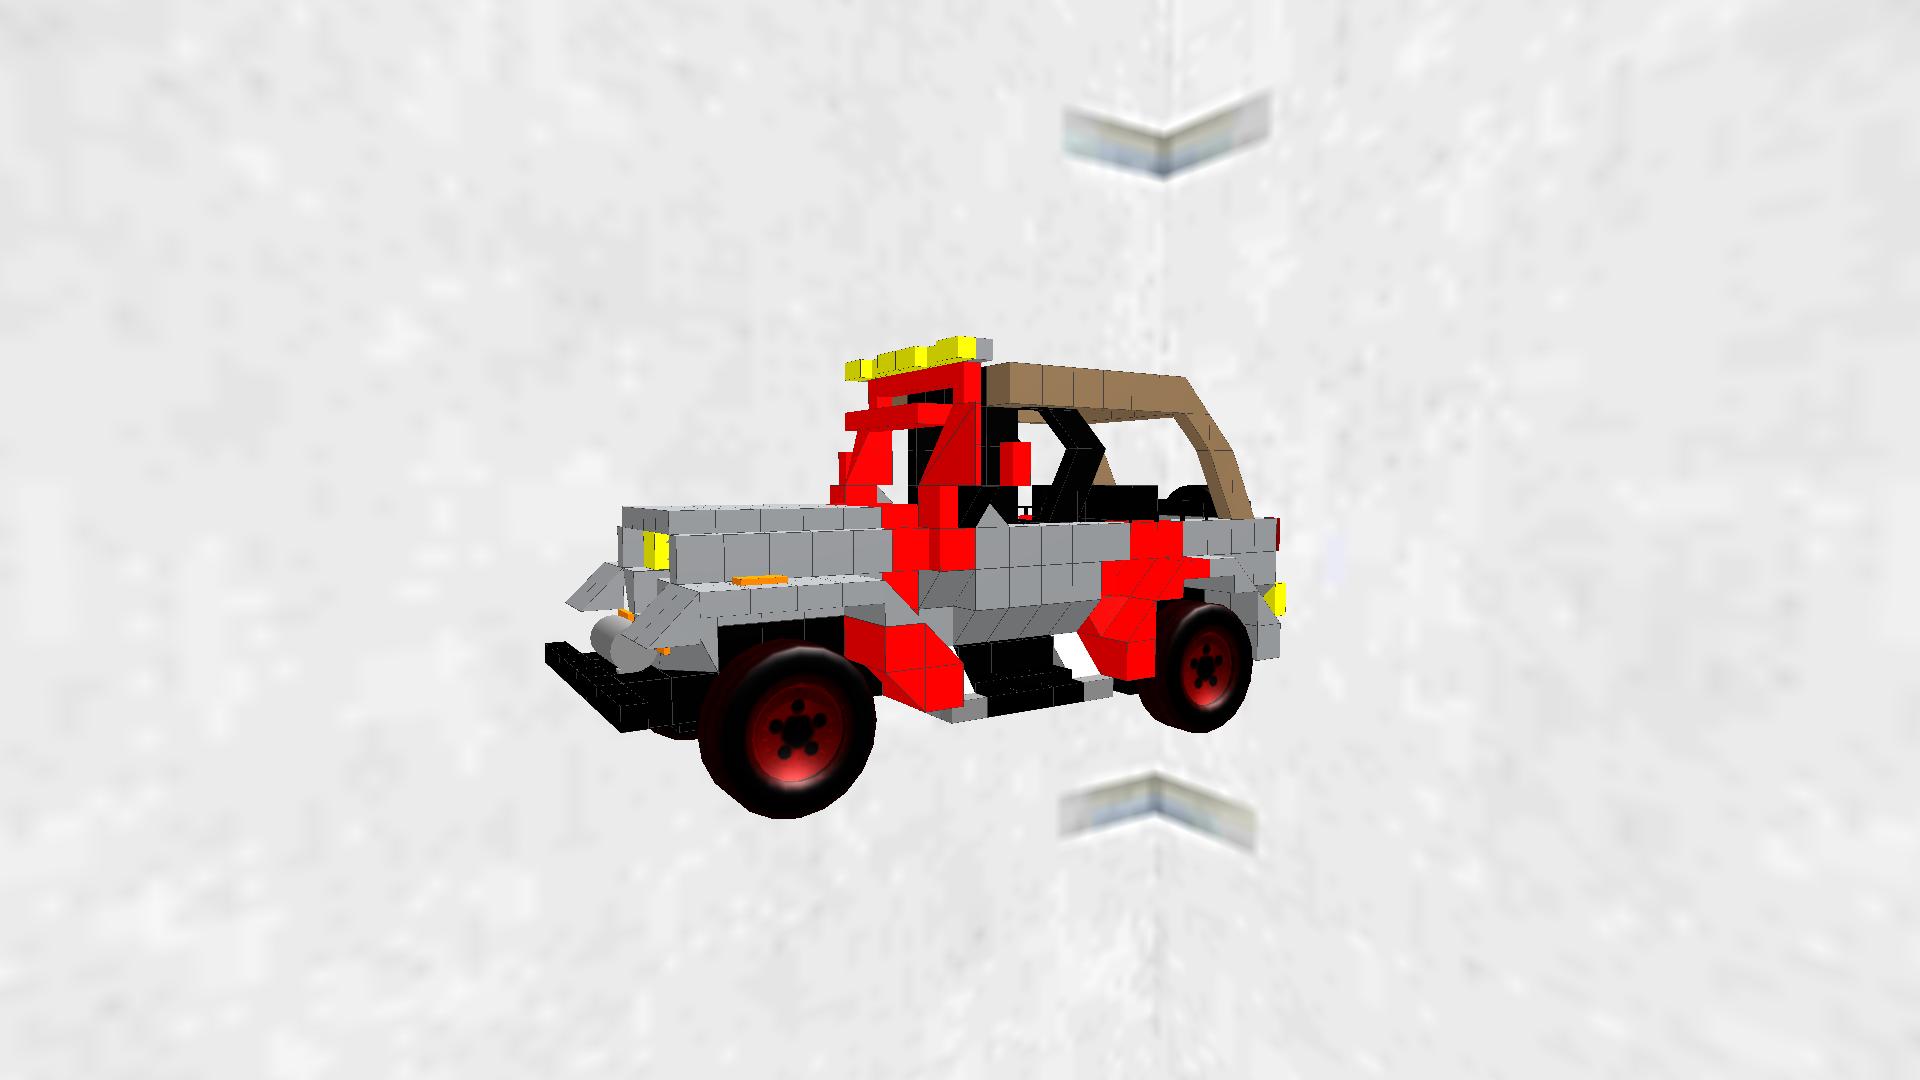 Jurassic park Jeep